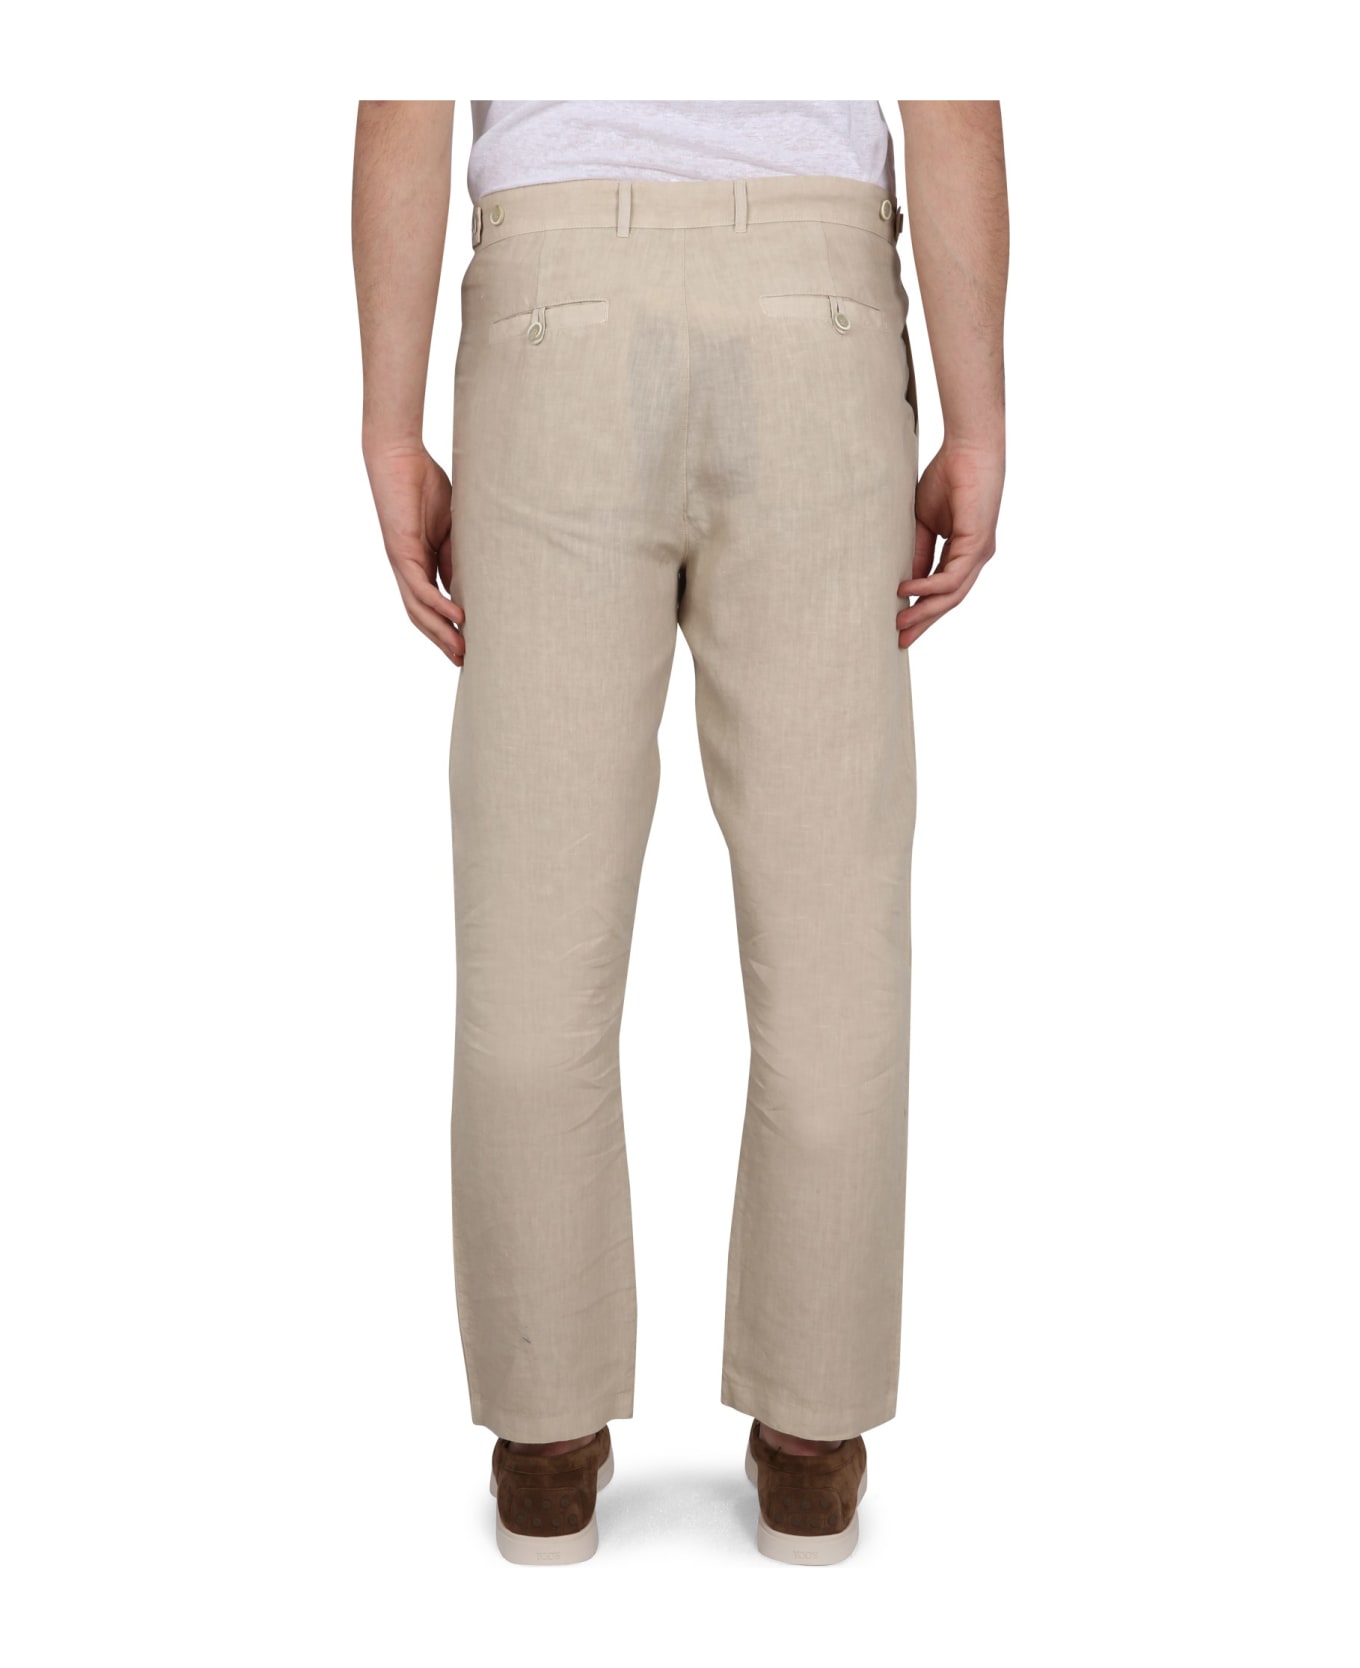 120% Lino Linen Pants - MARRONE